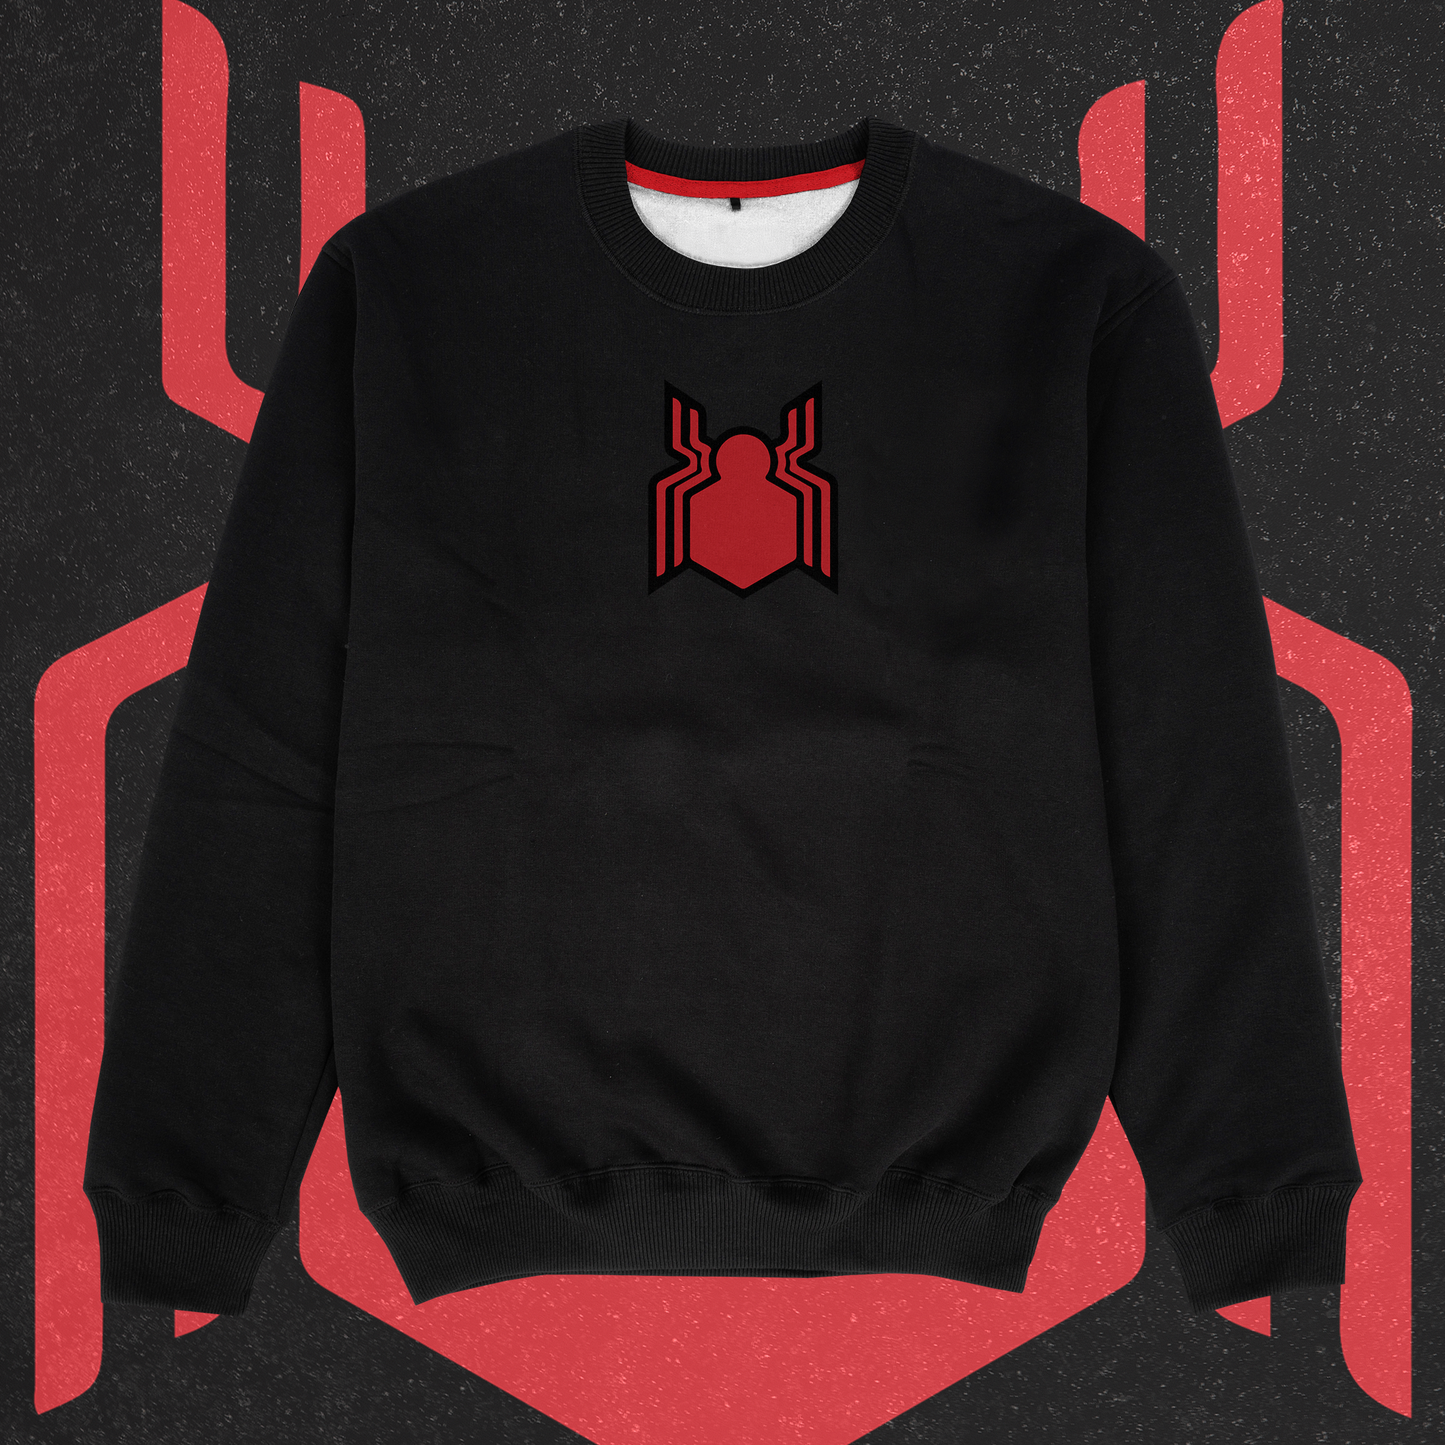 Spider-Man Sweatshirt